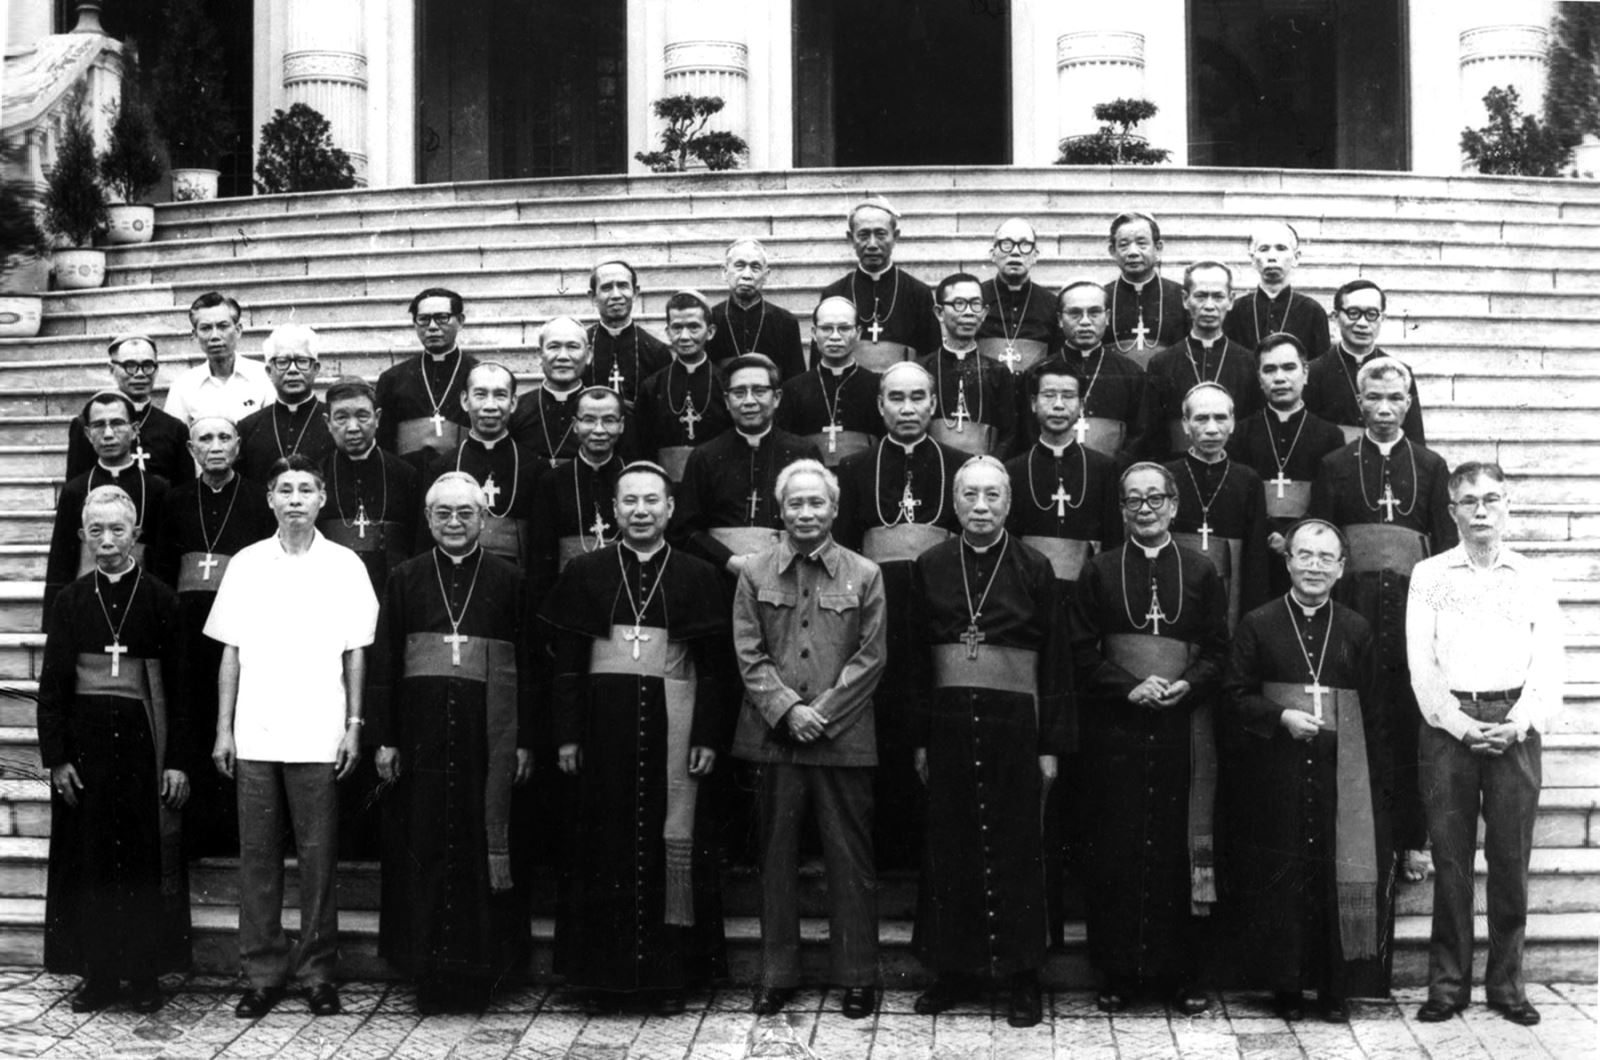 Hội nghị các Giám mục toàn quốc, tổ chức tại Hà Nội, Thủ đô Nước Cộng hòa Xã hội Chủ nghĩa Việt Nam, từ 24/4 đến 1/5/1980. 